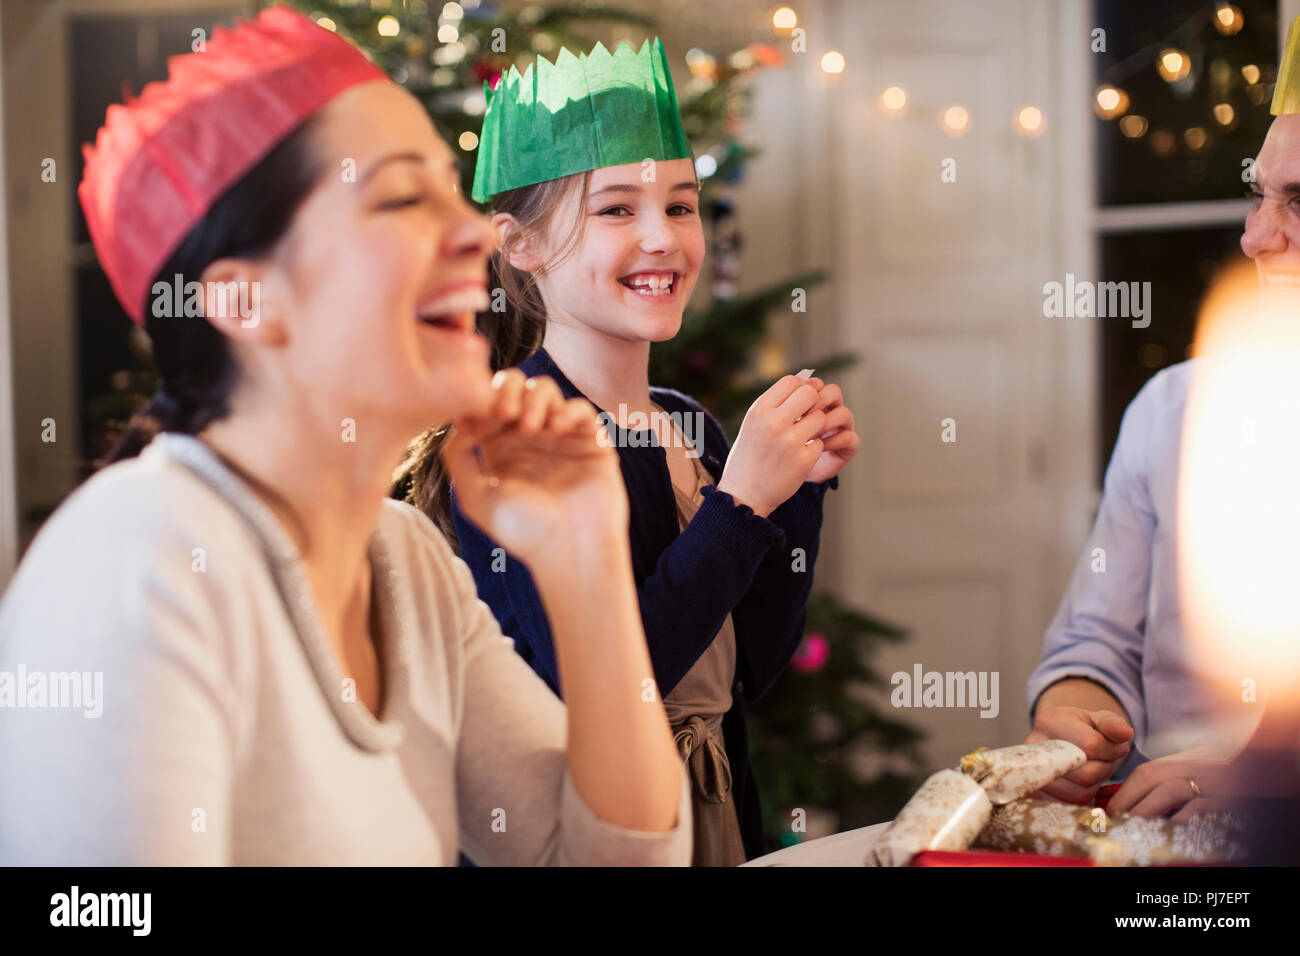 Familia Feliz en coronas de papel riendo en la cena de Navidad Foto de stock